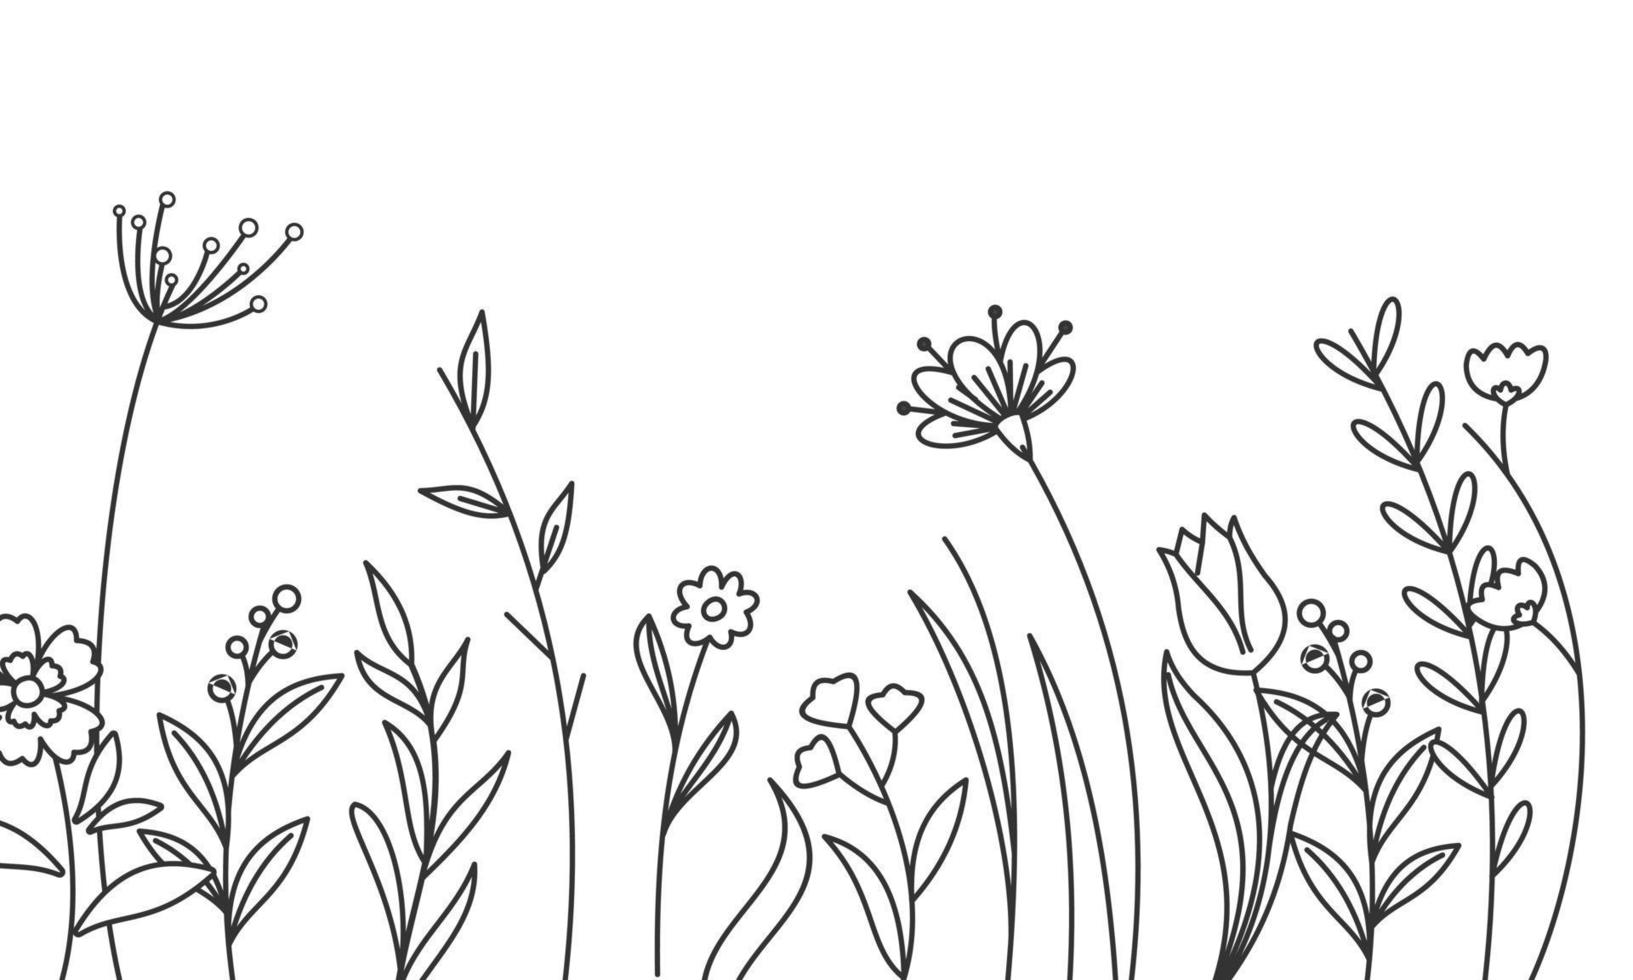 svart silhuetter av gräs, blommor och örter isolerat på vit bakgrund vektor